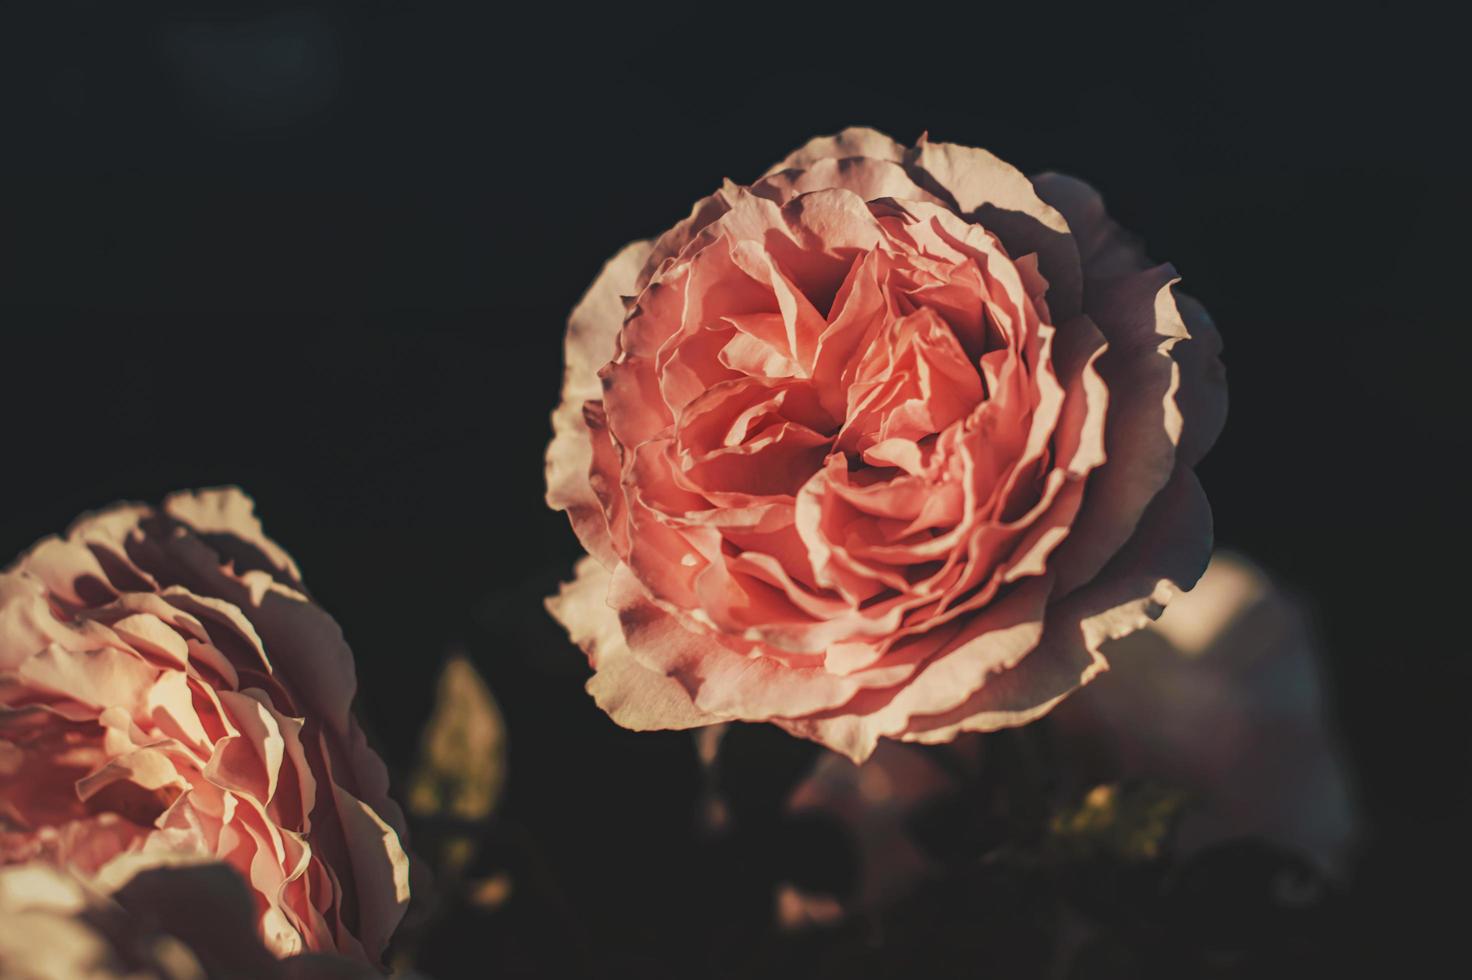 rosa rosa em flor foto